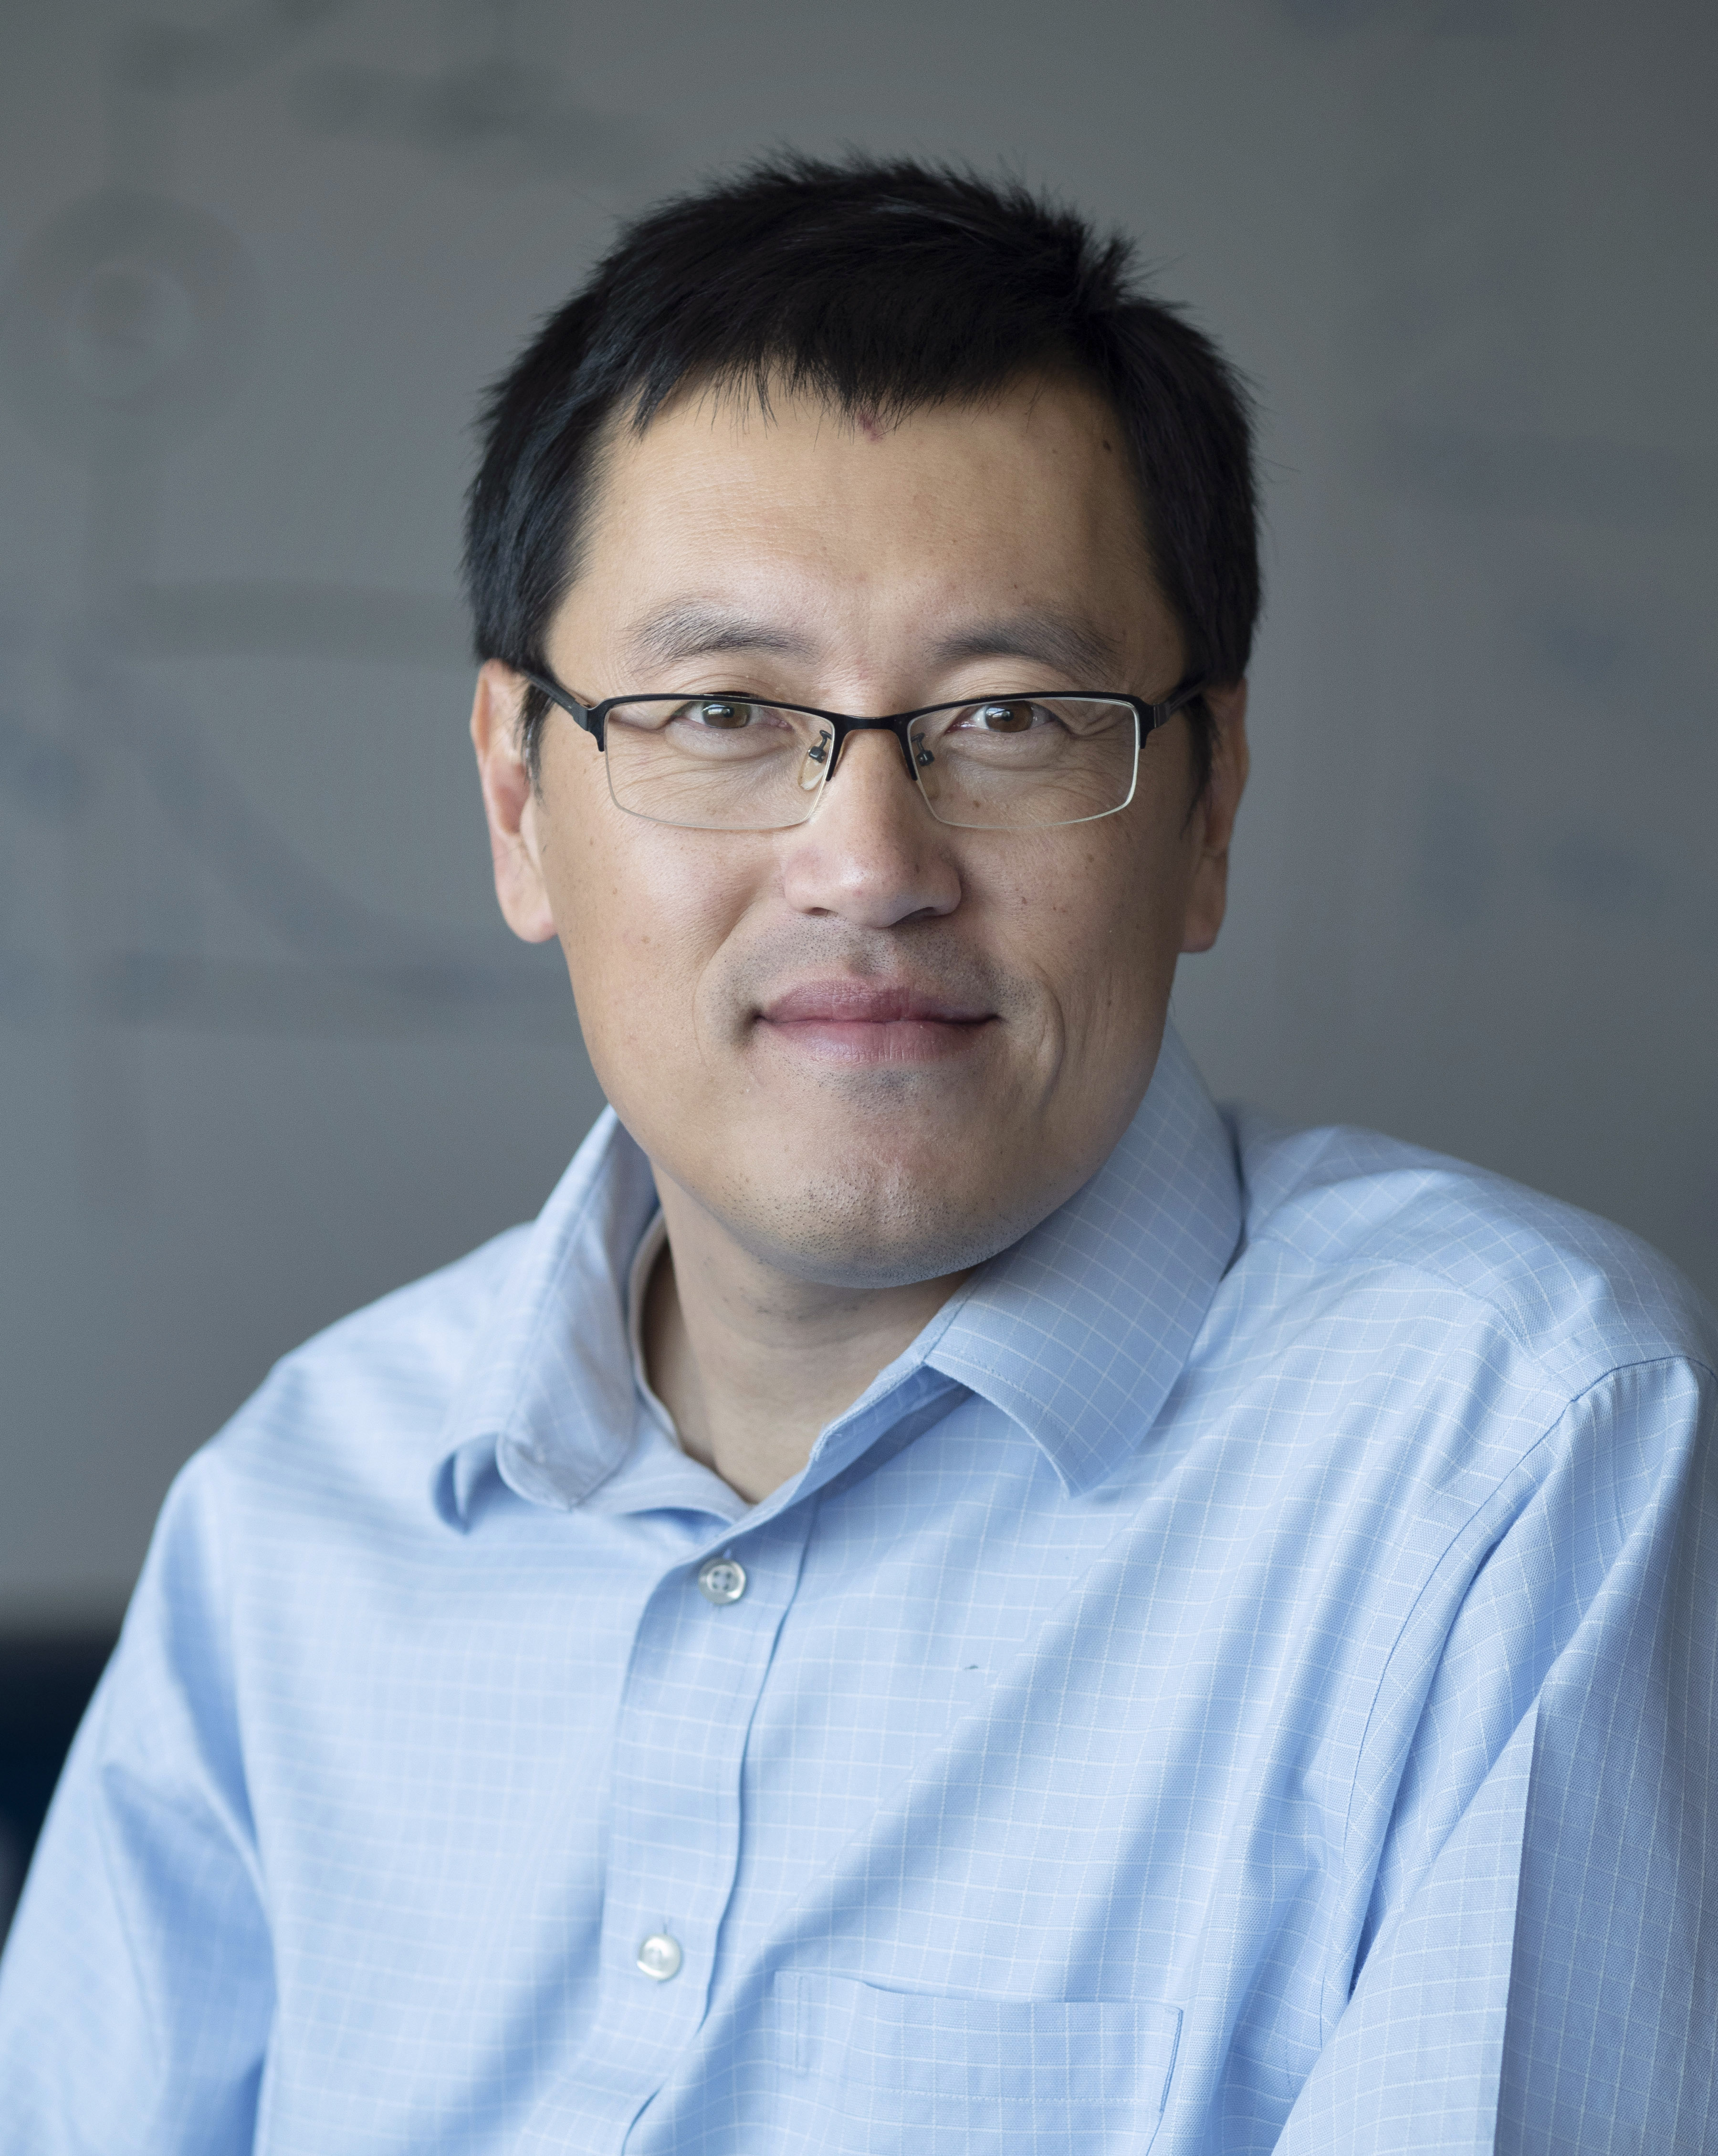 Dr. Jubin Chen